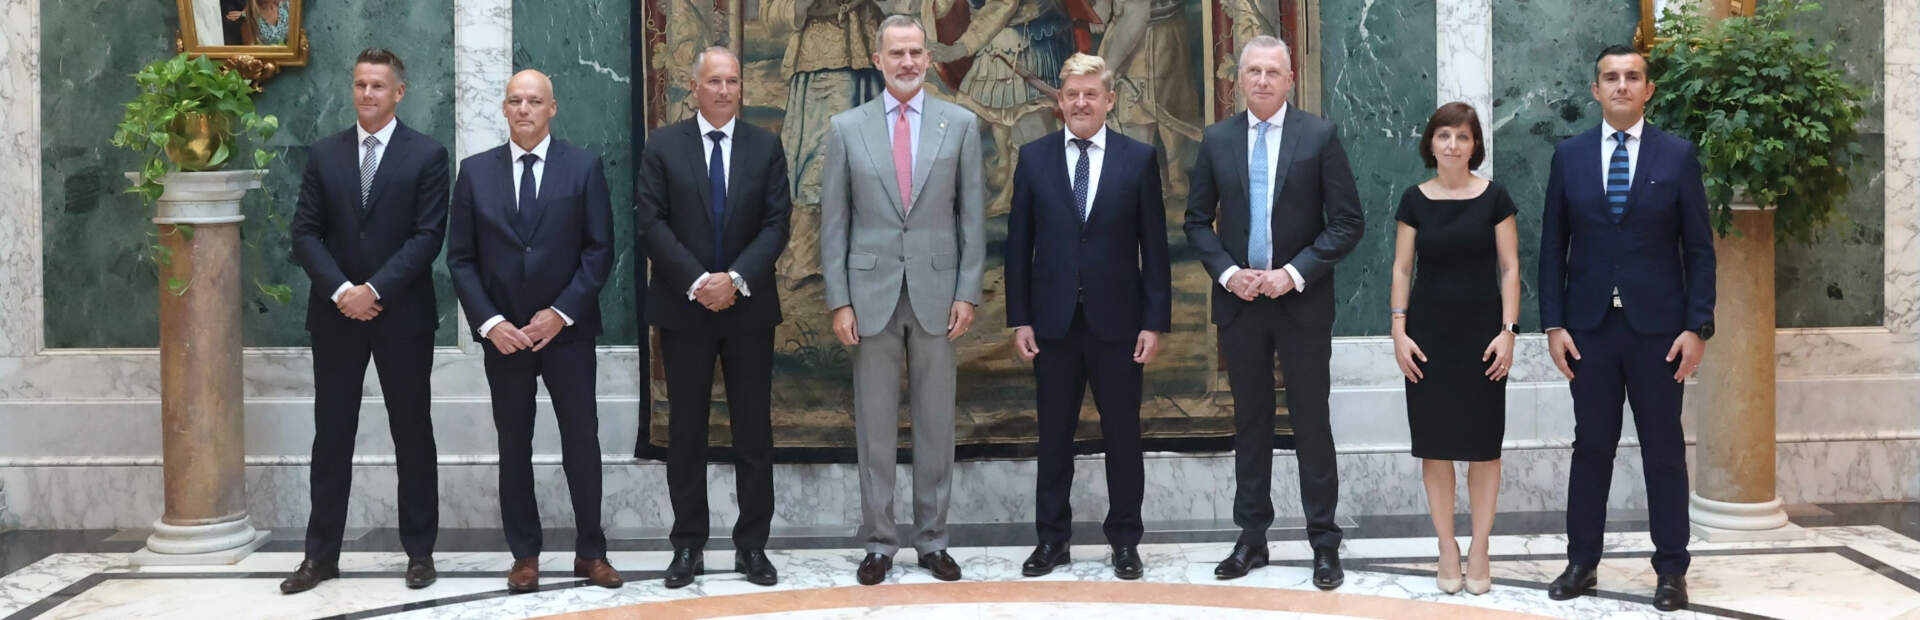 Król Filip VI spotkał się z członkami zarządu SEAT S.A. Jak będzie wyglądała elektryczna przyszłość Hiszpanii?